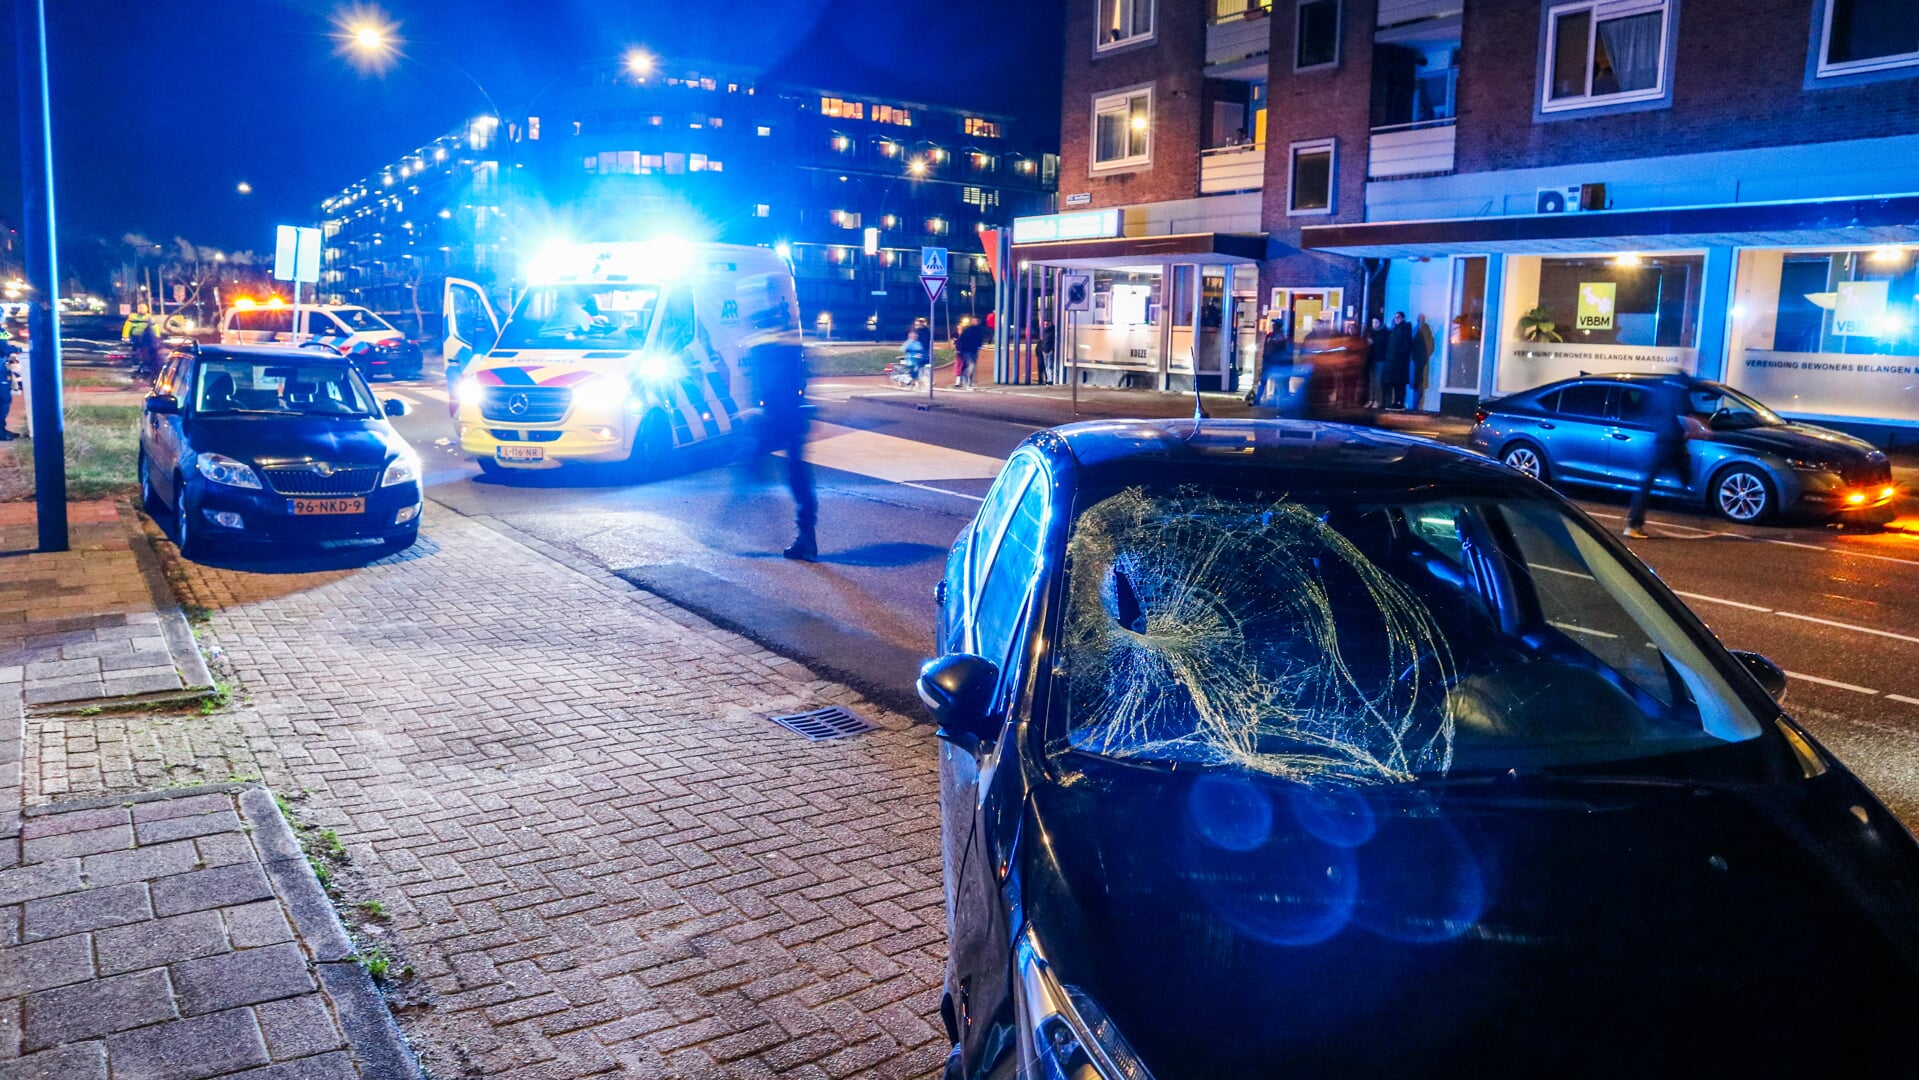 Voetganger ernstig gewond bij aanrijding in Maassluis, bestuurster aangehouden